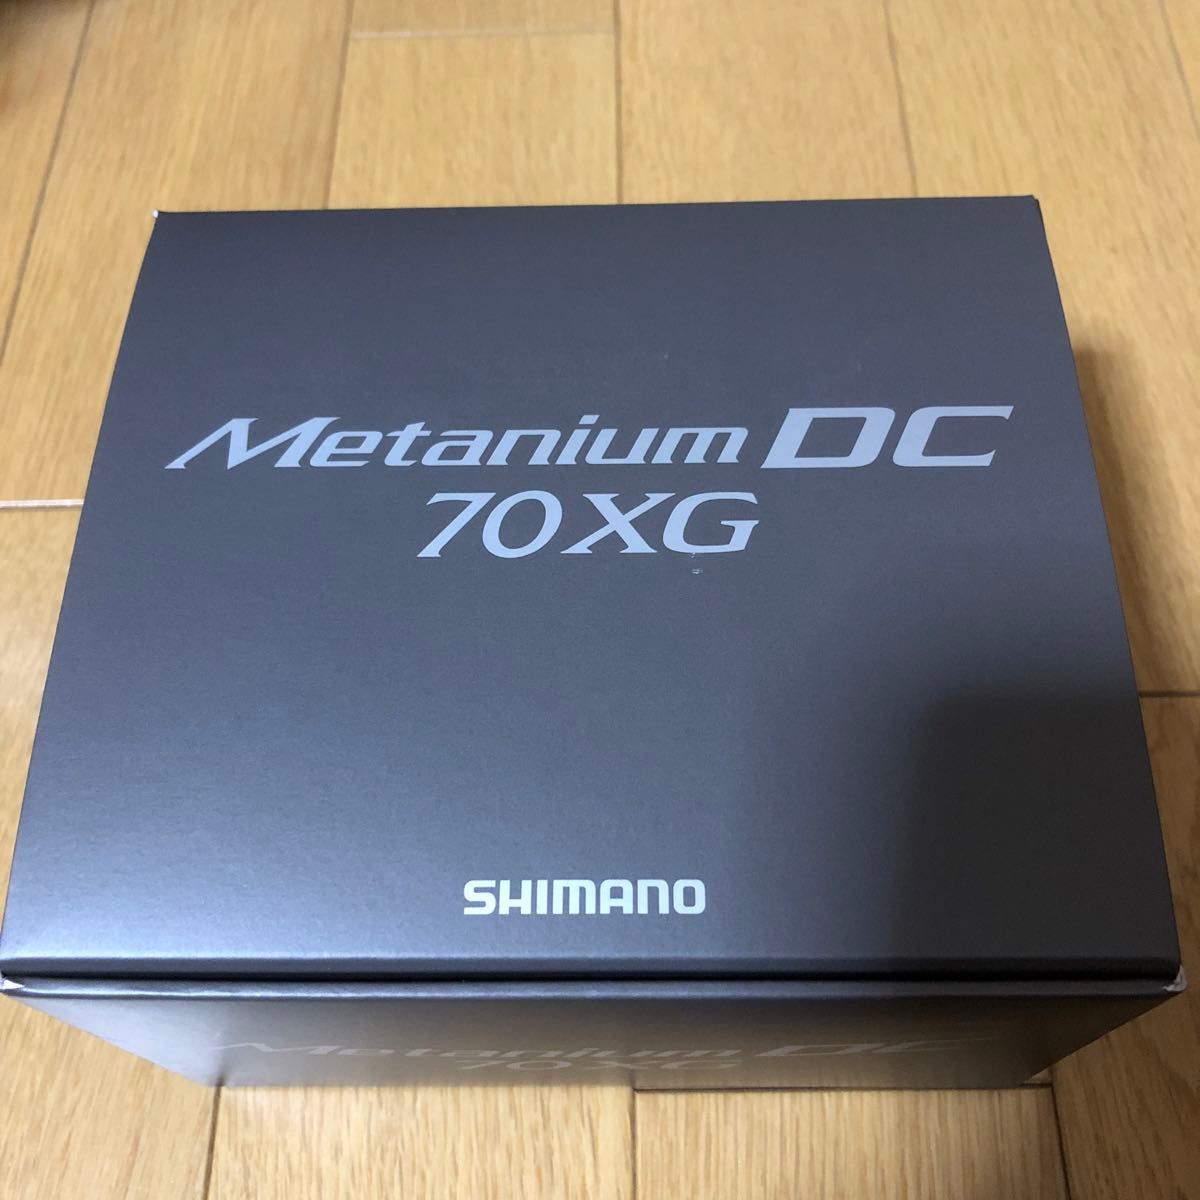 シマノ 24 Metanium DC 70XG 右ハンドル 新品  SHIMANO メタニウム